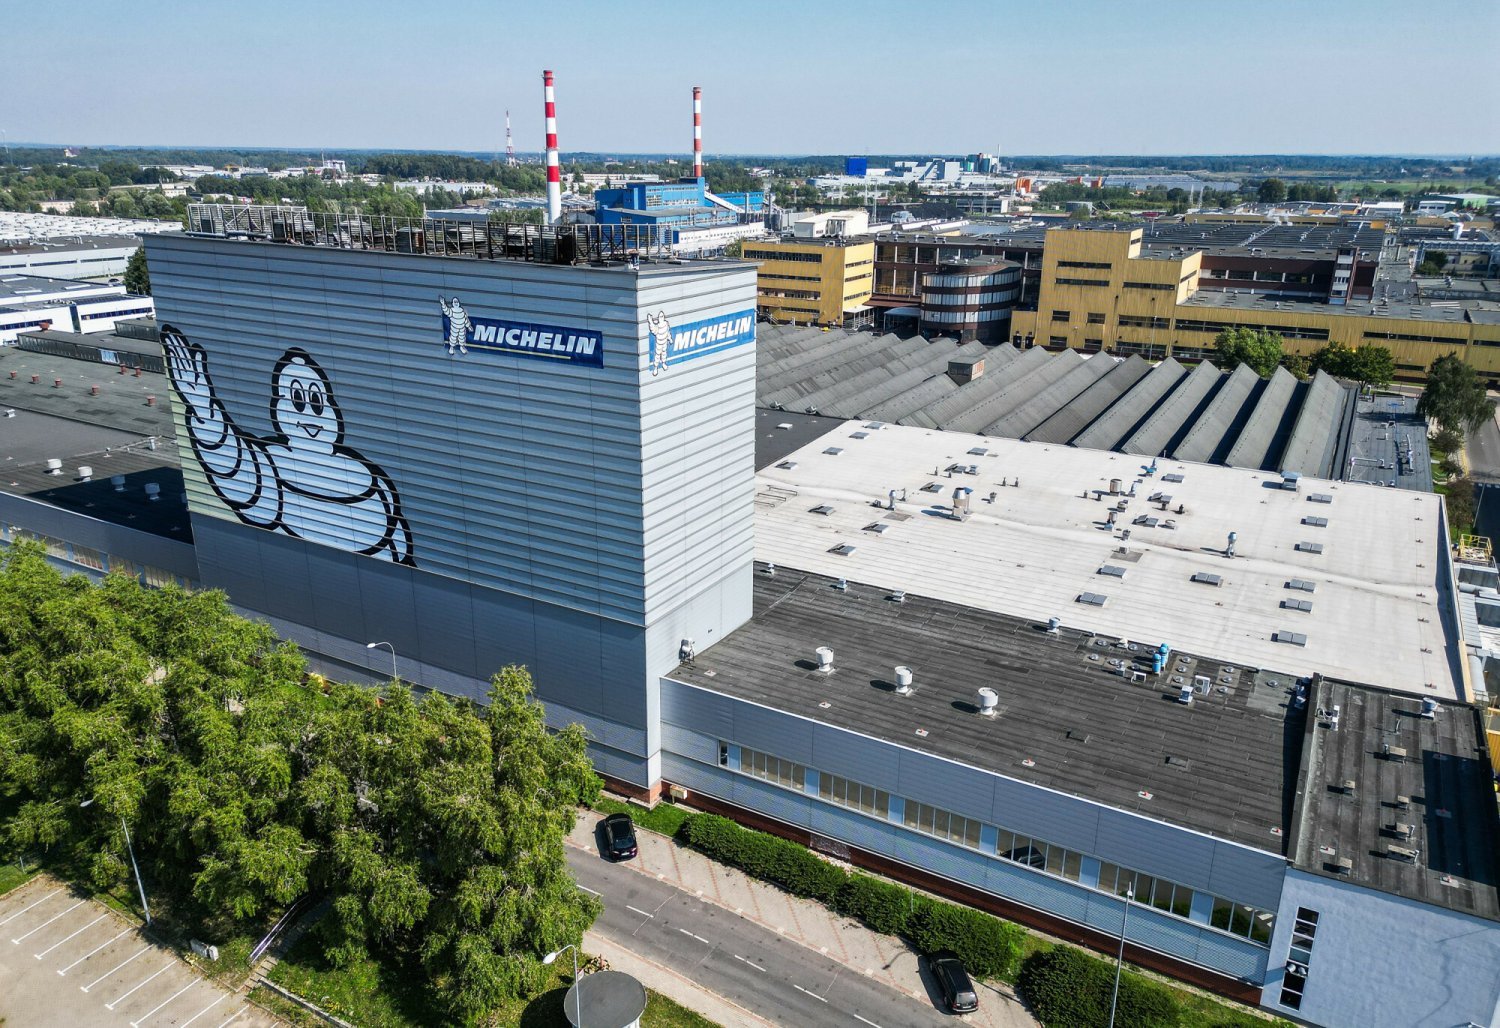 Zamkną ogromną fabrykę Michelin w Olsztynie. "Ludzie nie wyrzuceni, a przeniesieni"